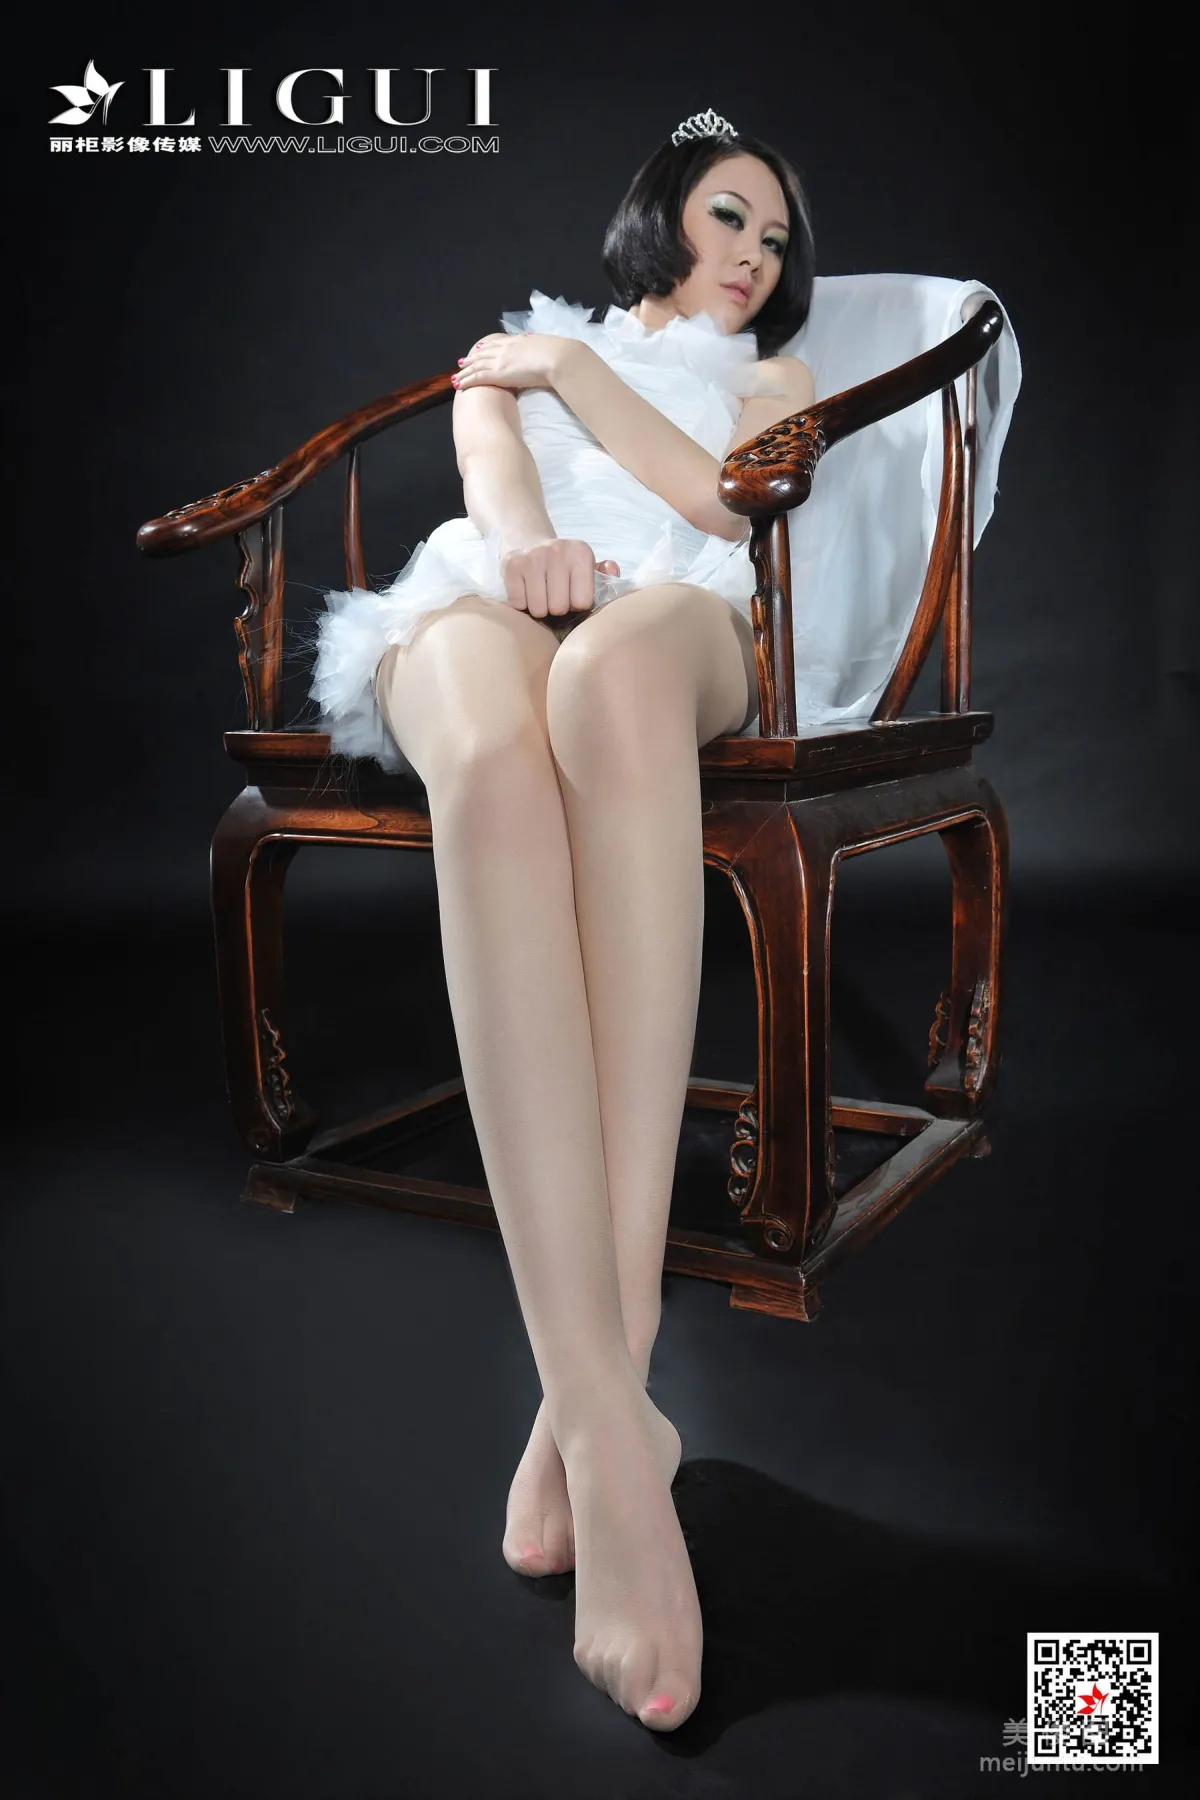 [丽柜Ligui] Model 菲菲 《女王》 写真集28